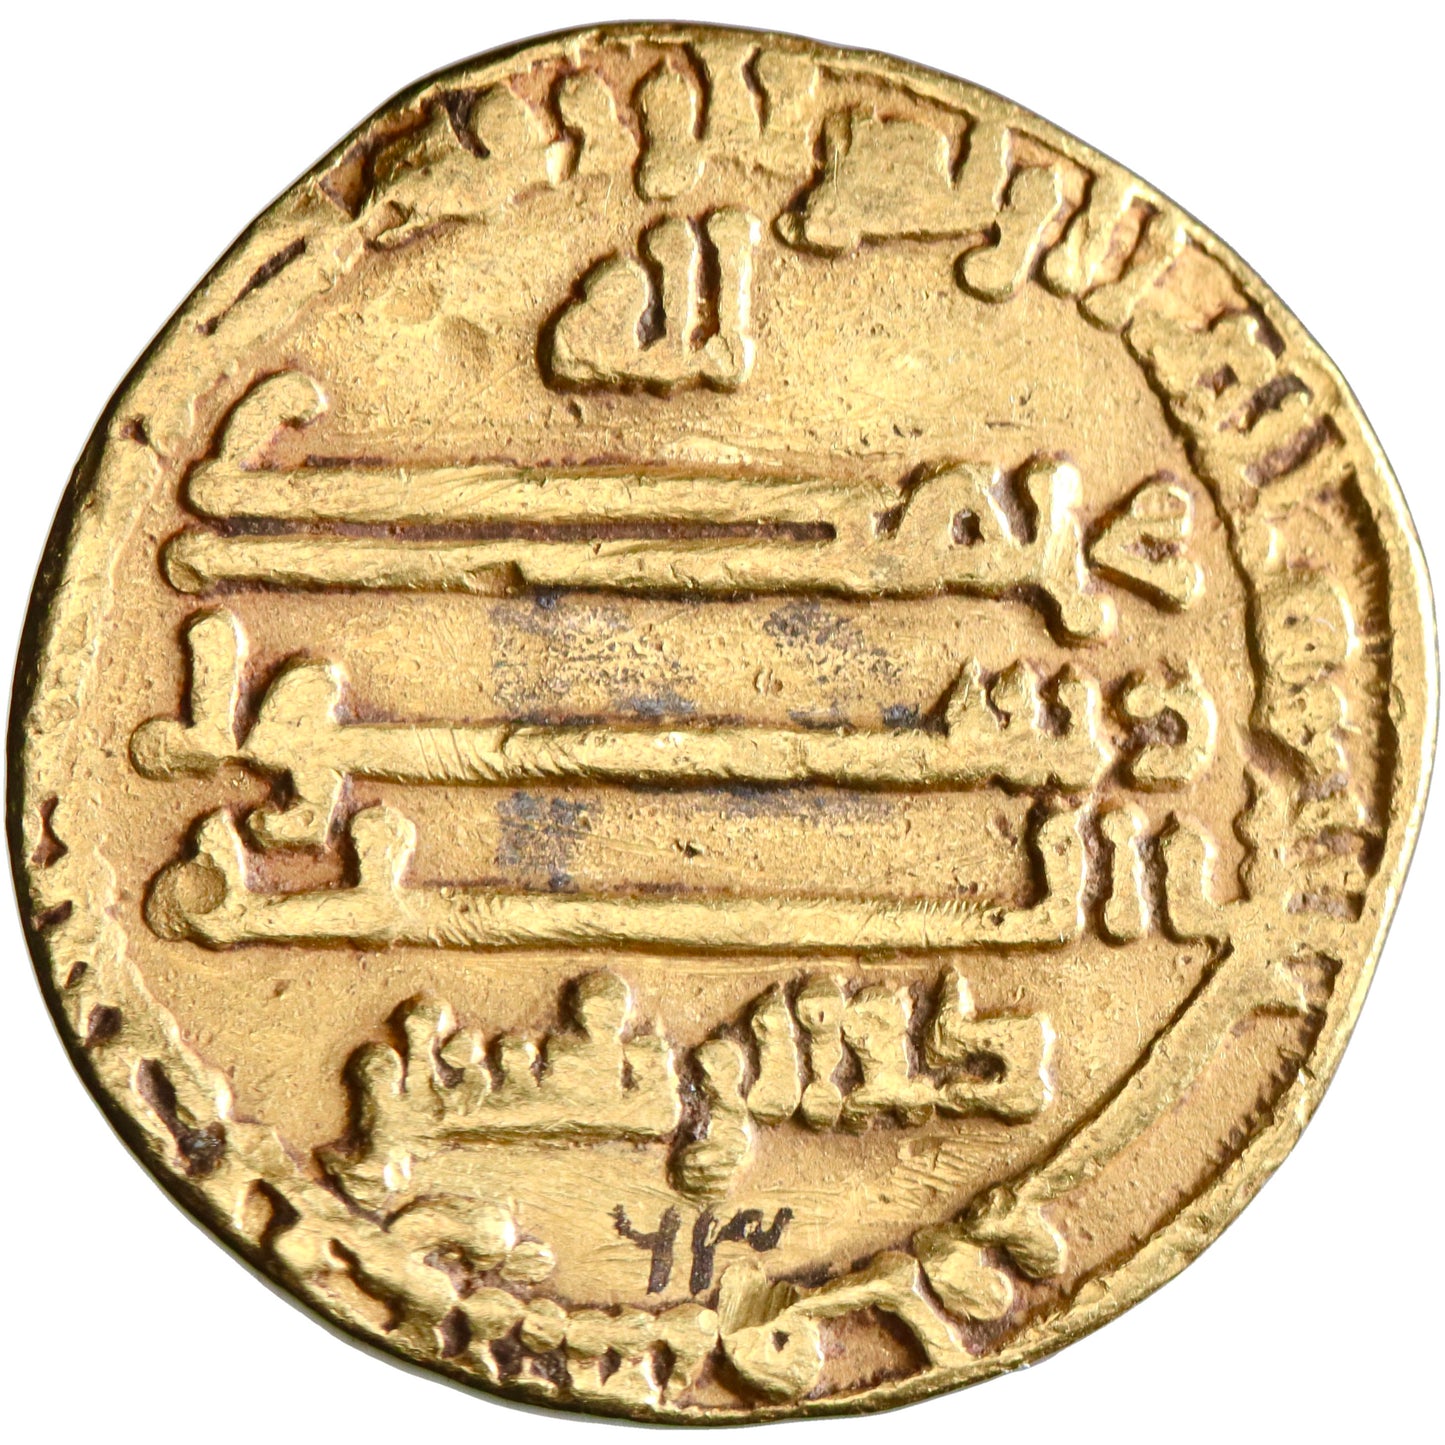 Abbasid, al-Ma'mun, gold dinar, AH 200, citing al-Hasan [ibn Sahl] and Dhu'l-Ri'asatayn